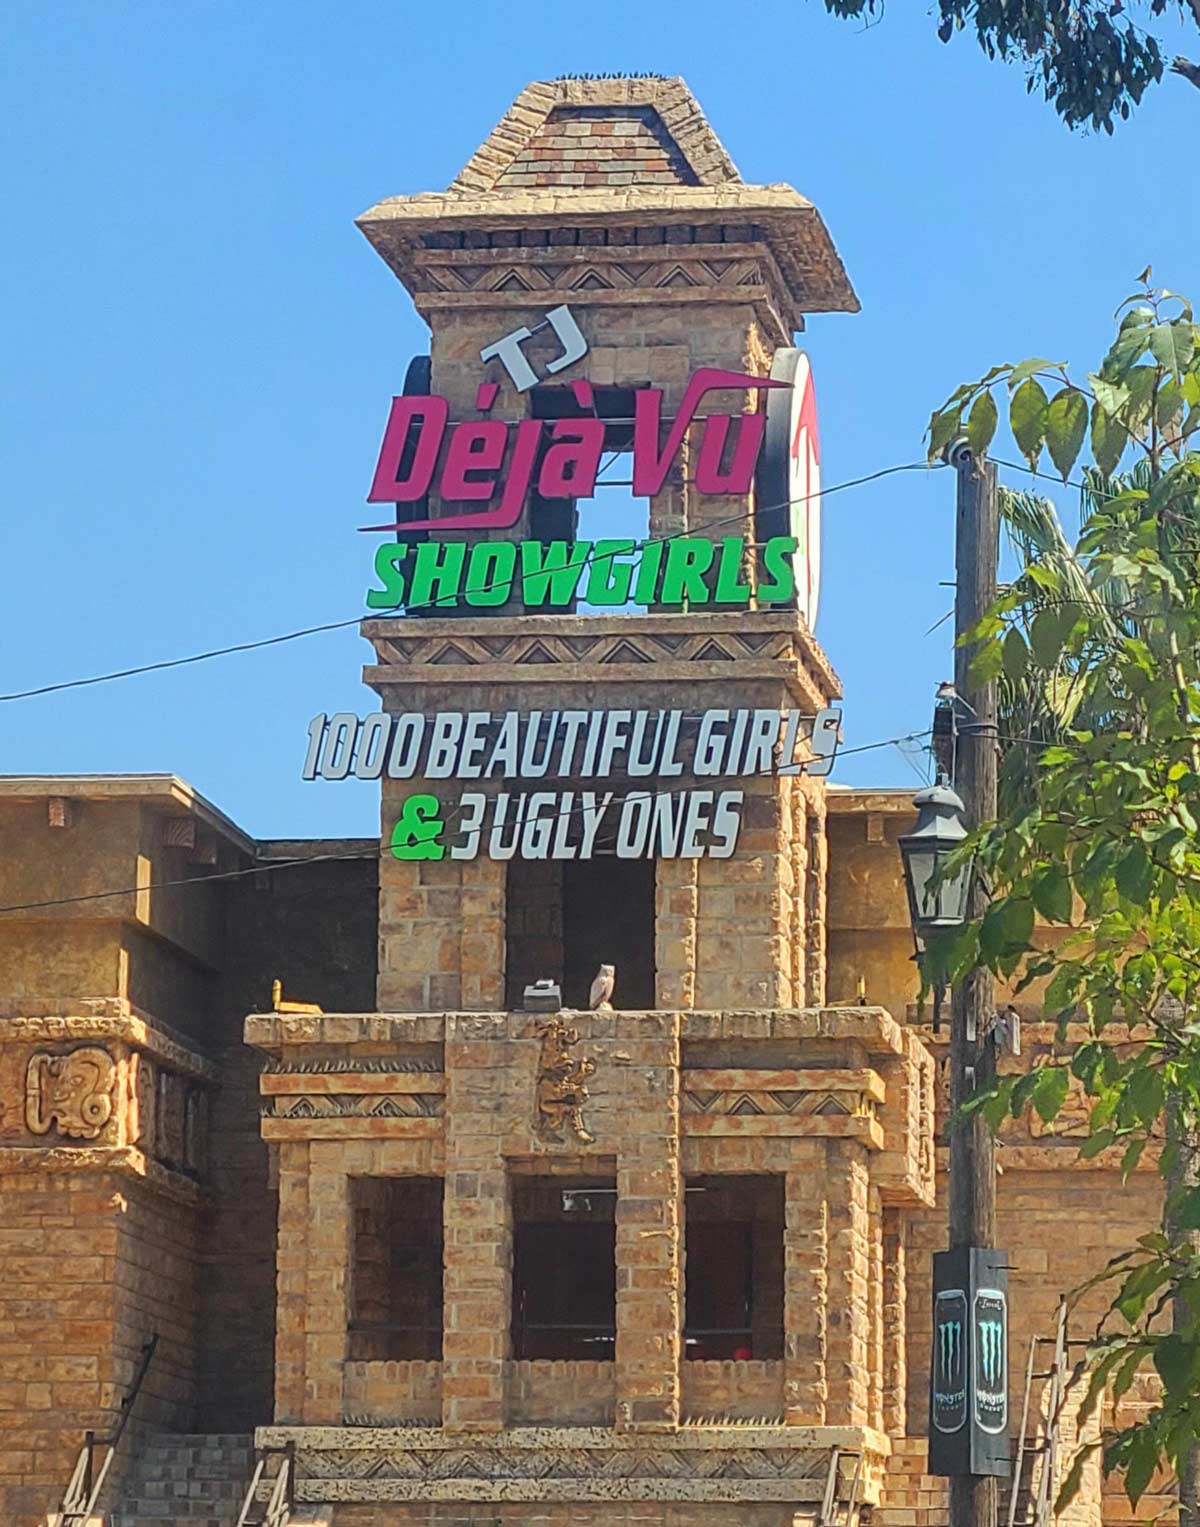 Popular strip club in Tijuana, Mexico